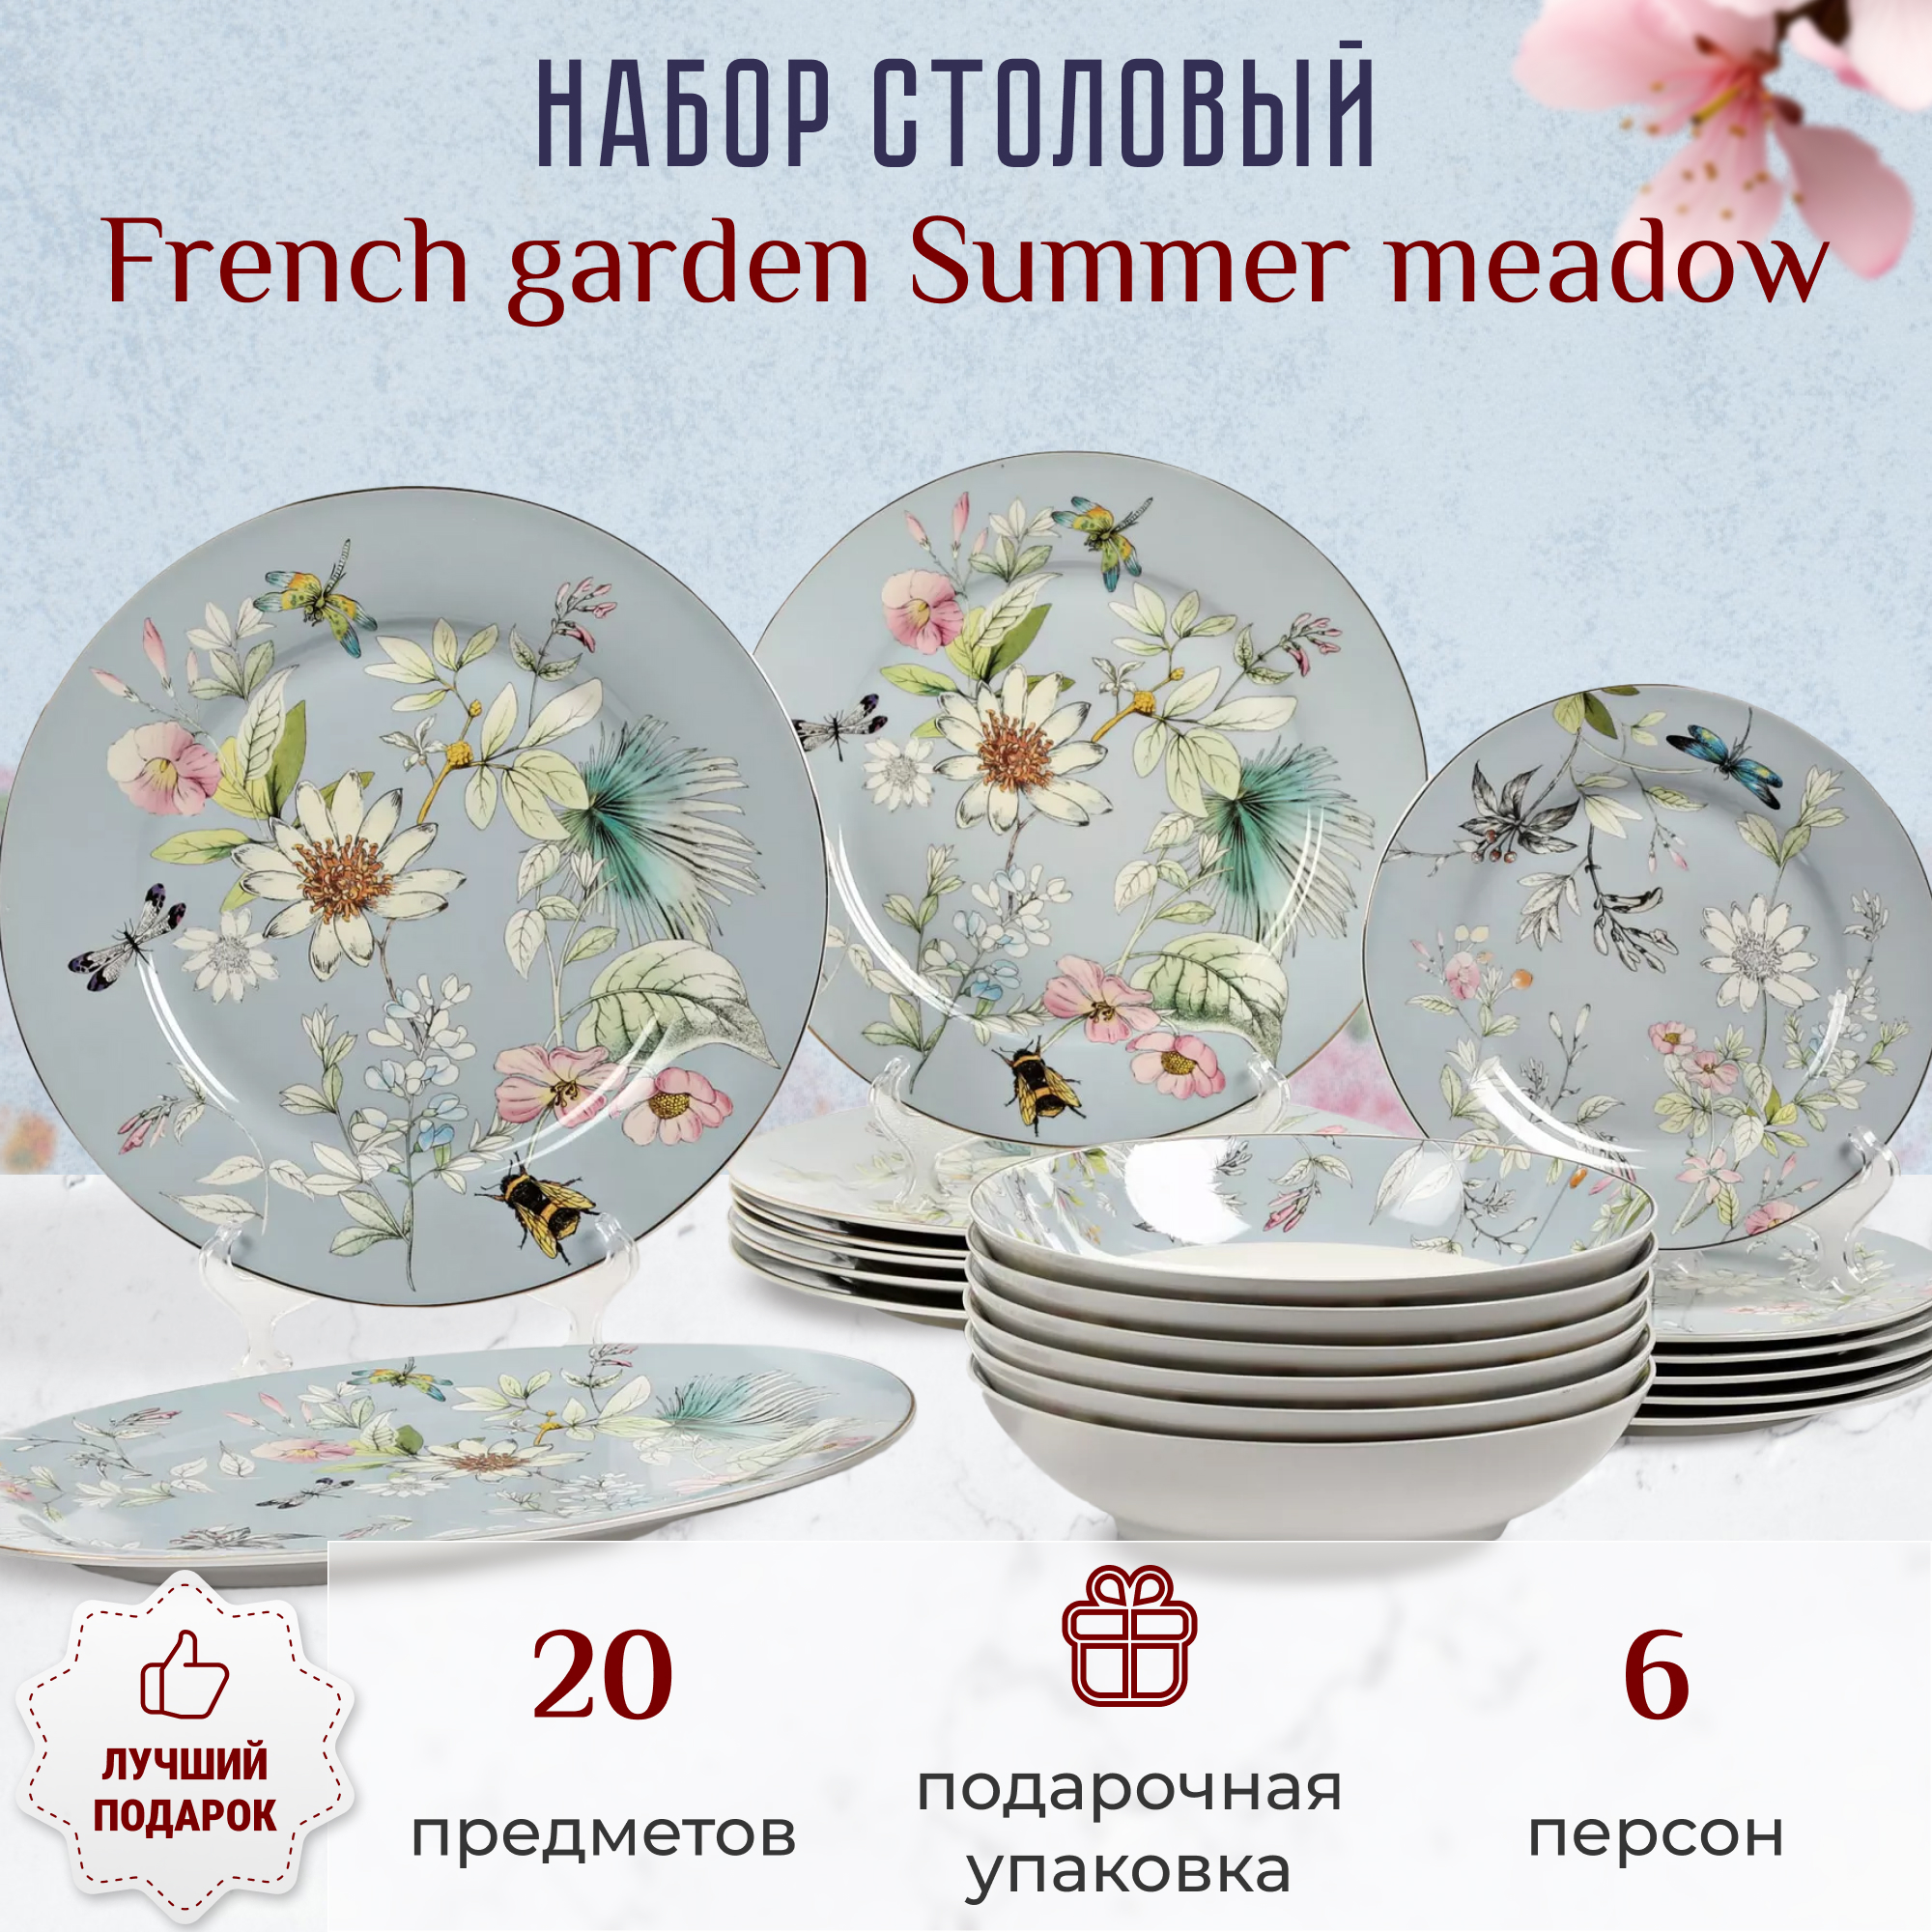 Набор столовый French garden Summer meadow 6 персон 20 предметов, цвет мультиколор - фото 2